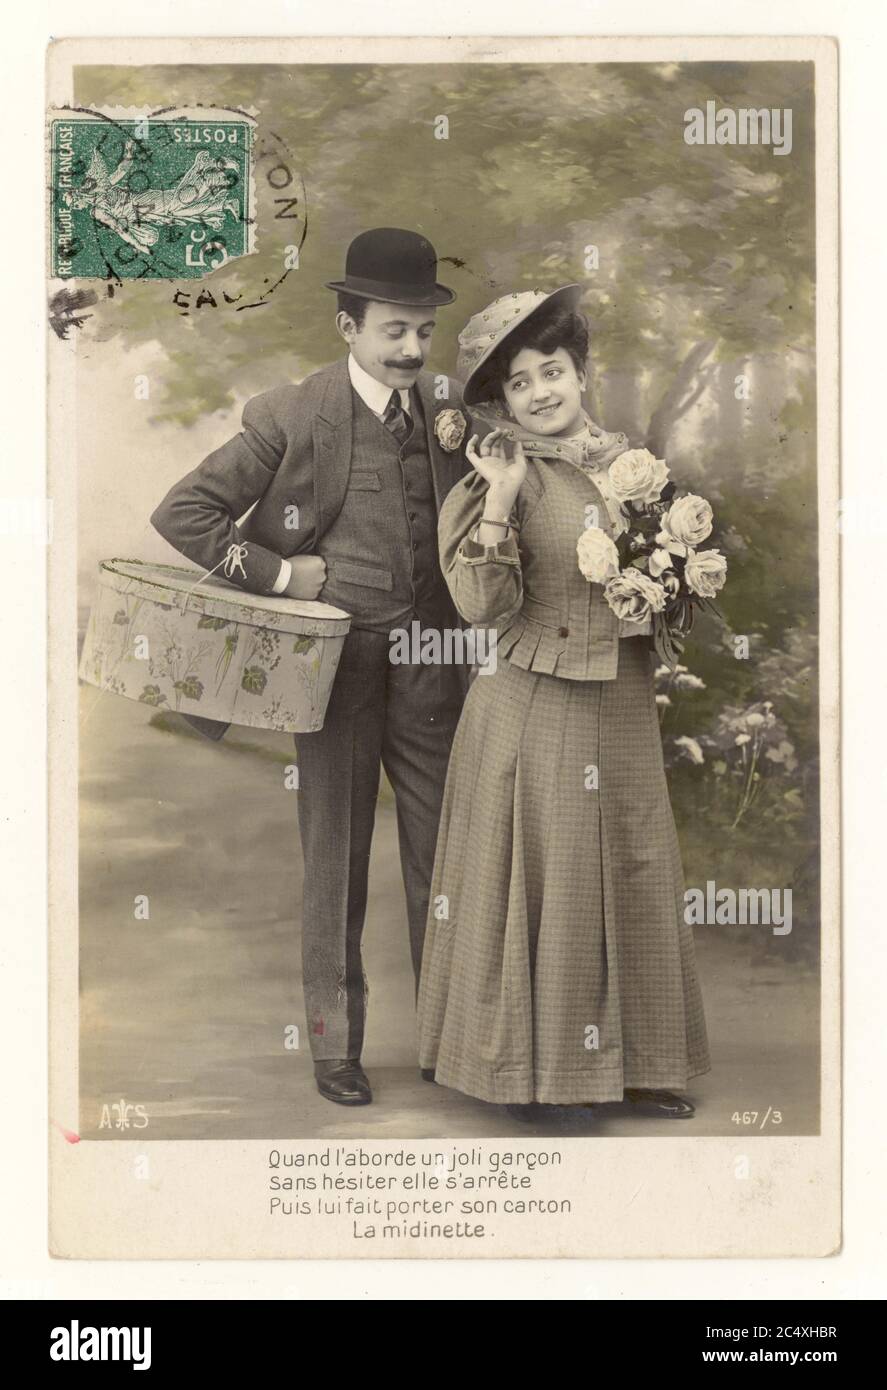 Carte postale originale de vœux sentimentale française du début des années 1900 - deux jeunes amants, l'homme portant un chapeau de melon, porte le shopping de la femme, timbre vert utilisé par la poste sur la carte postale France, vers 1911 Banque D'Images